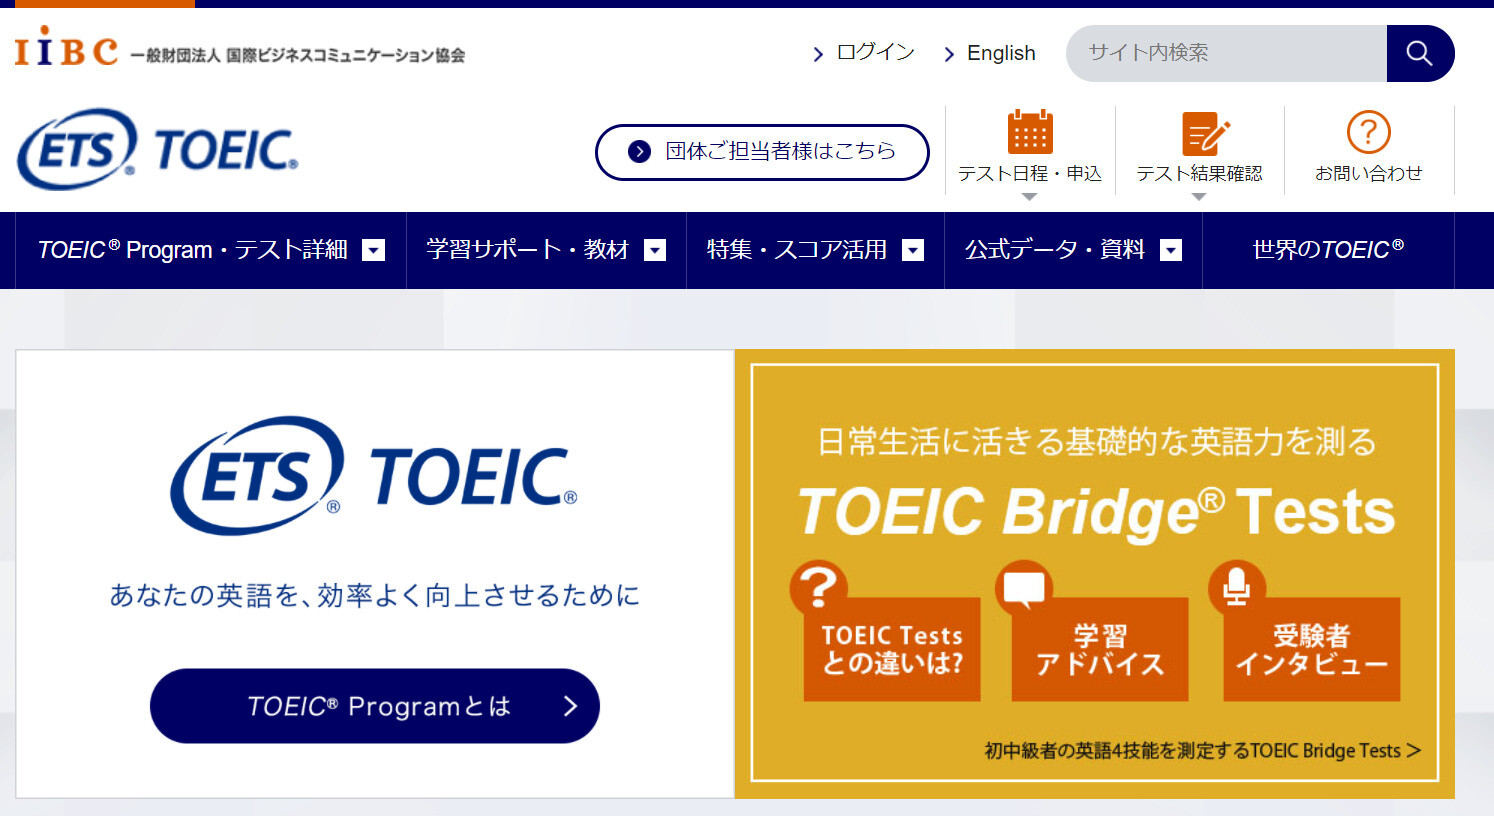 TOEIC Programのページ